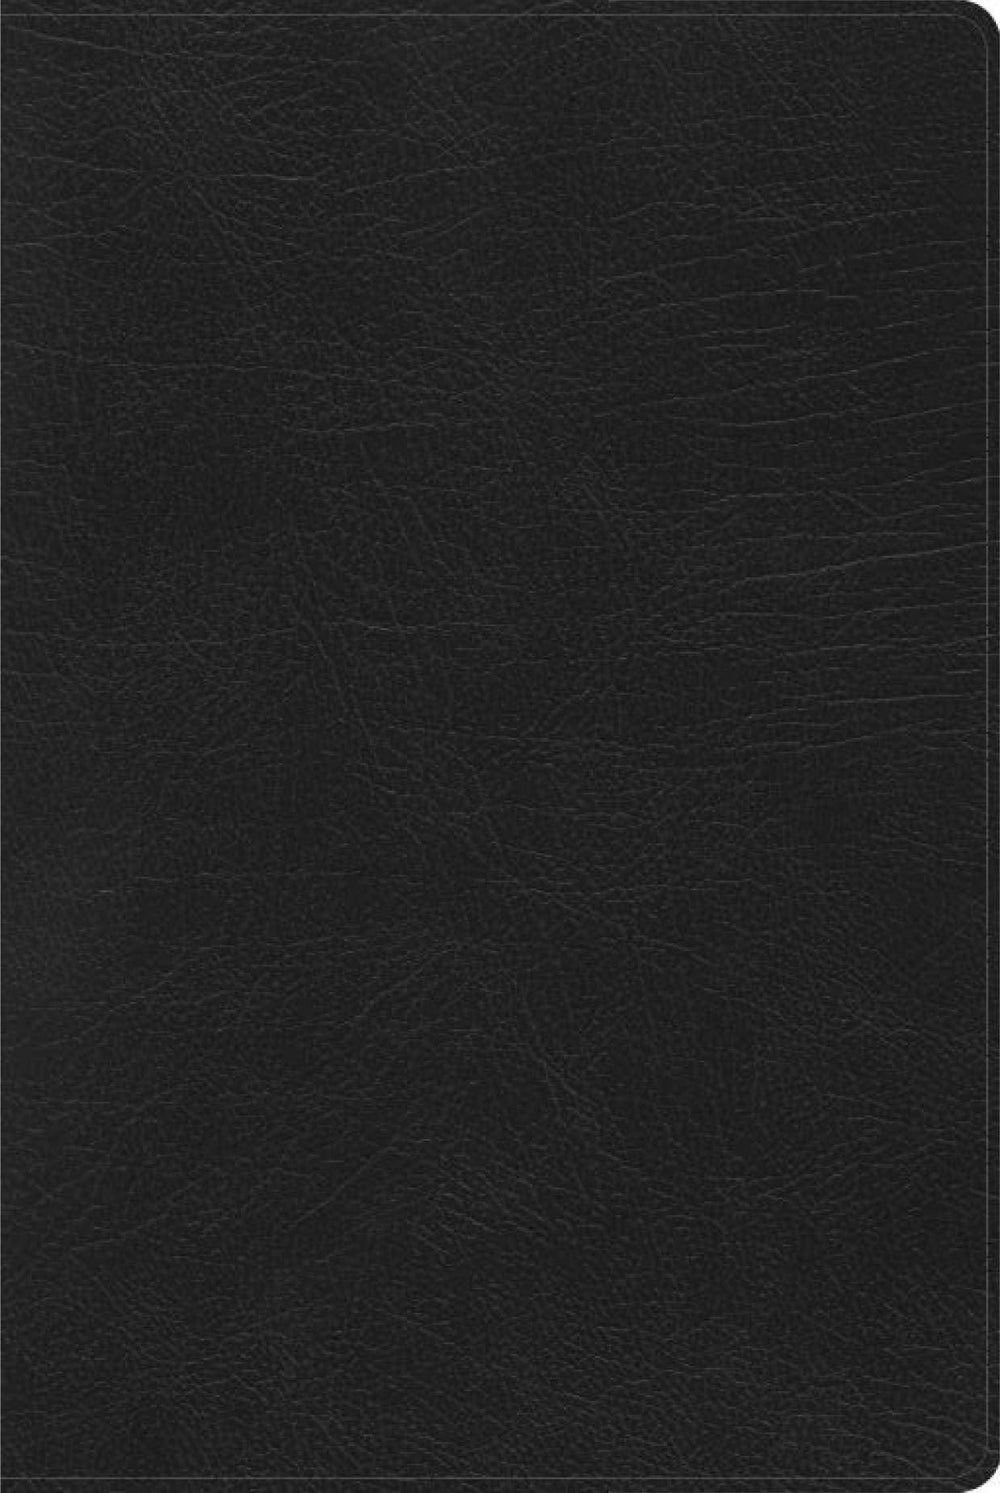 RVR 1960 Biblia de Estudio Arcoiris, negro símil piel con índice - Pura Vida Books